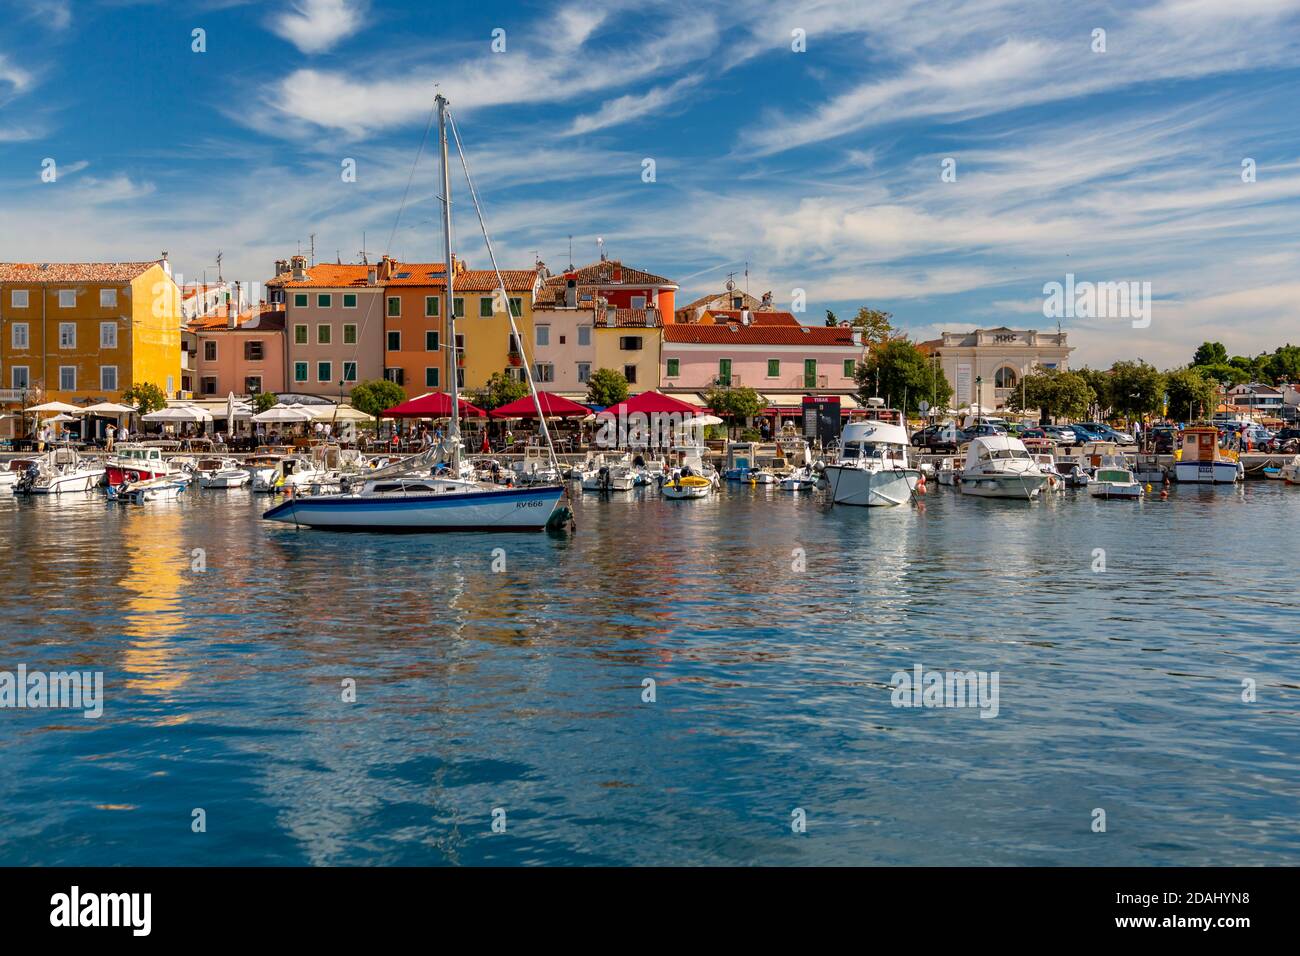 Vue sur le port et les bâtiments colorés de la vieille ville de Rovinj, Croatie, Mer Adriatique, Istrie, Croatie, Europe Banque D'Images